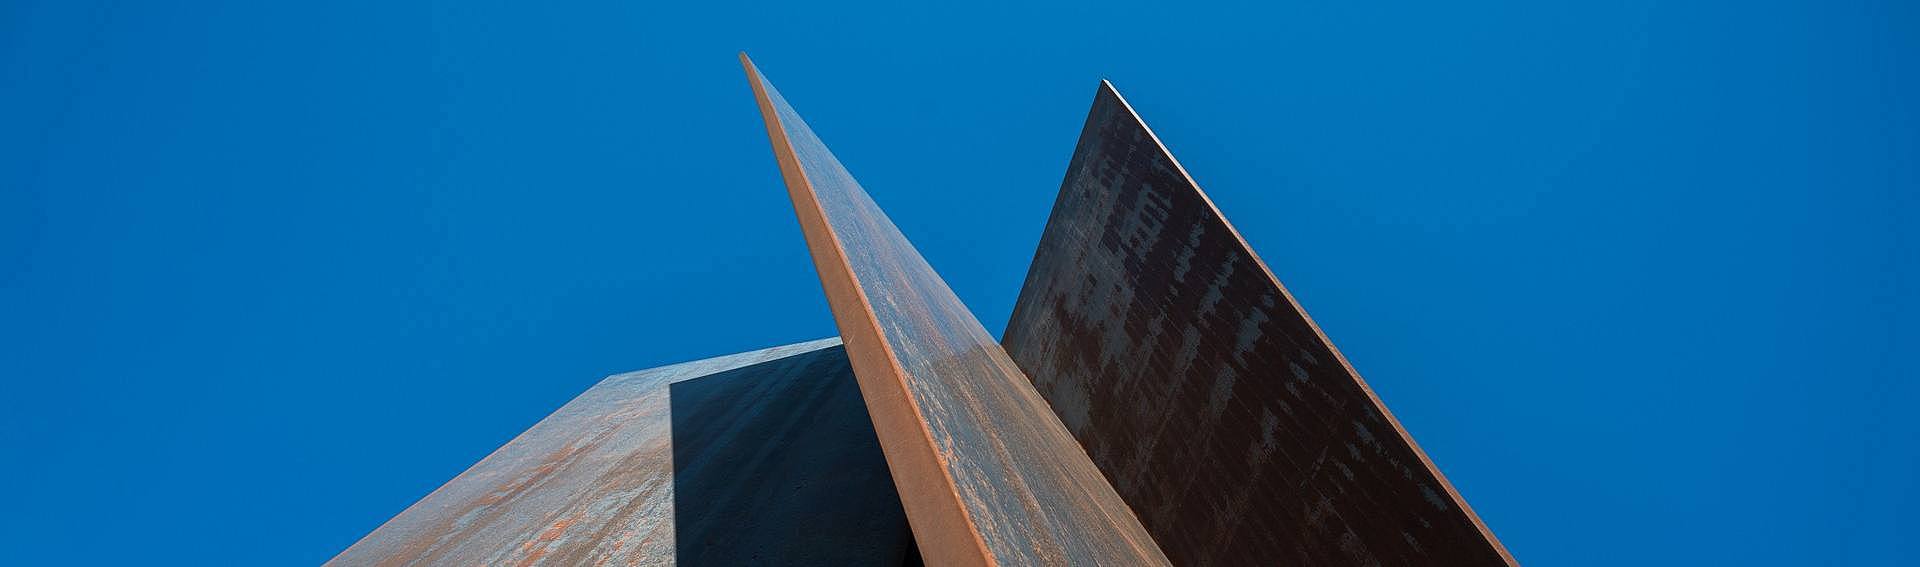 Blick nach oben auf die Stahlskulptur Torque von Richard Serra